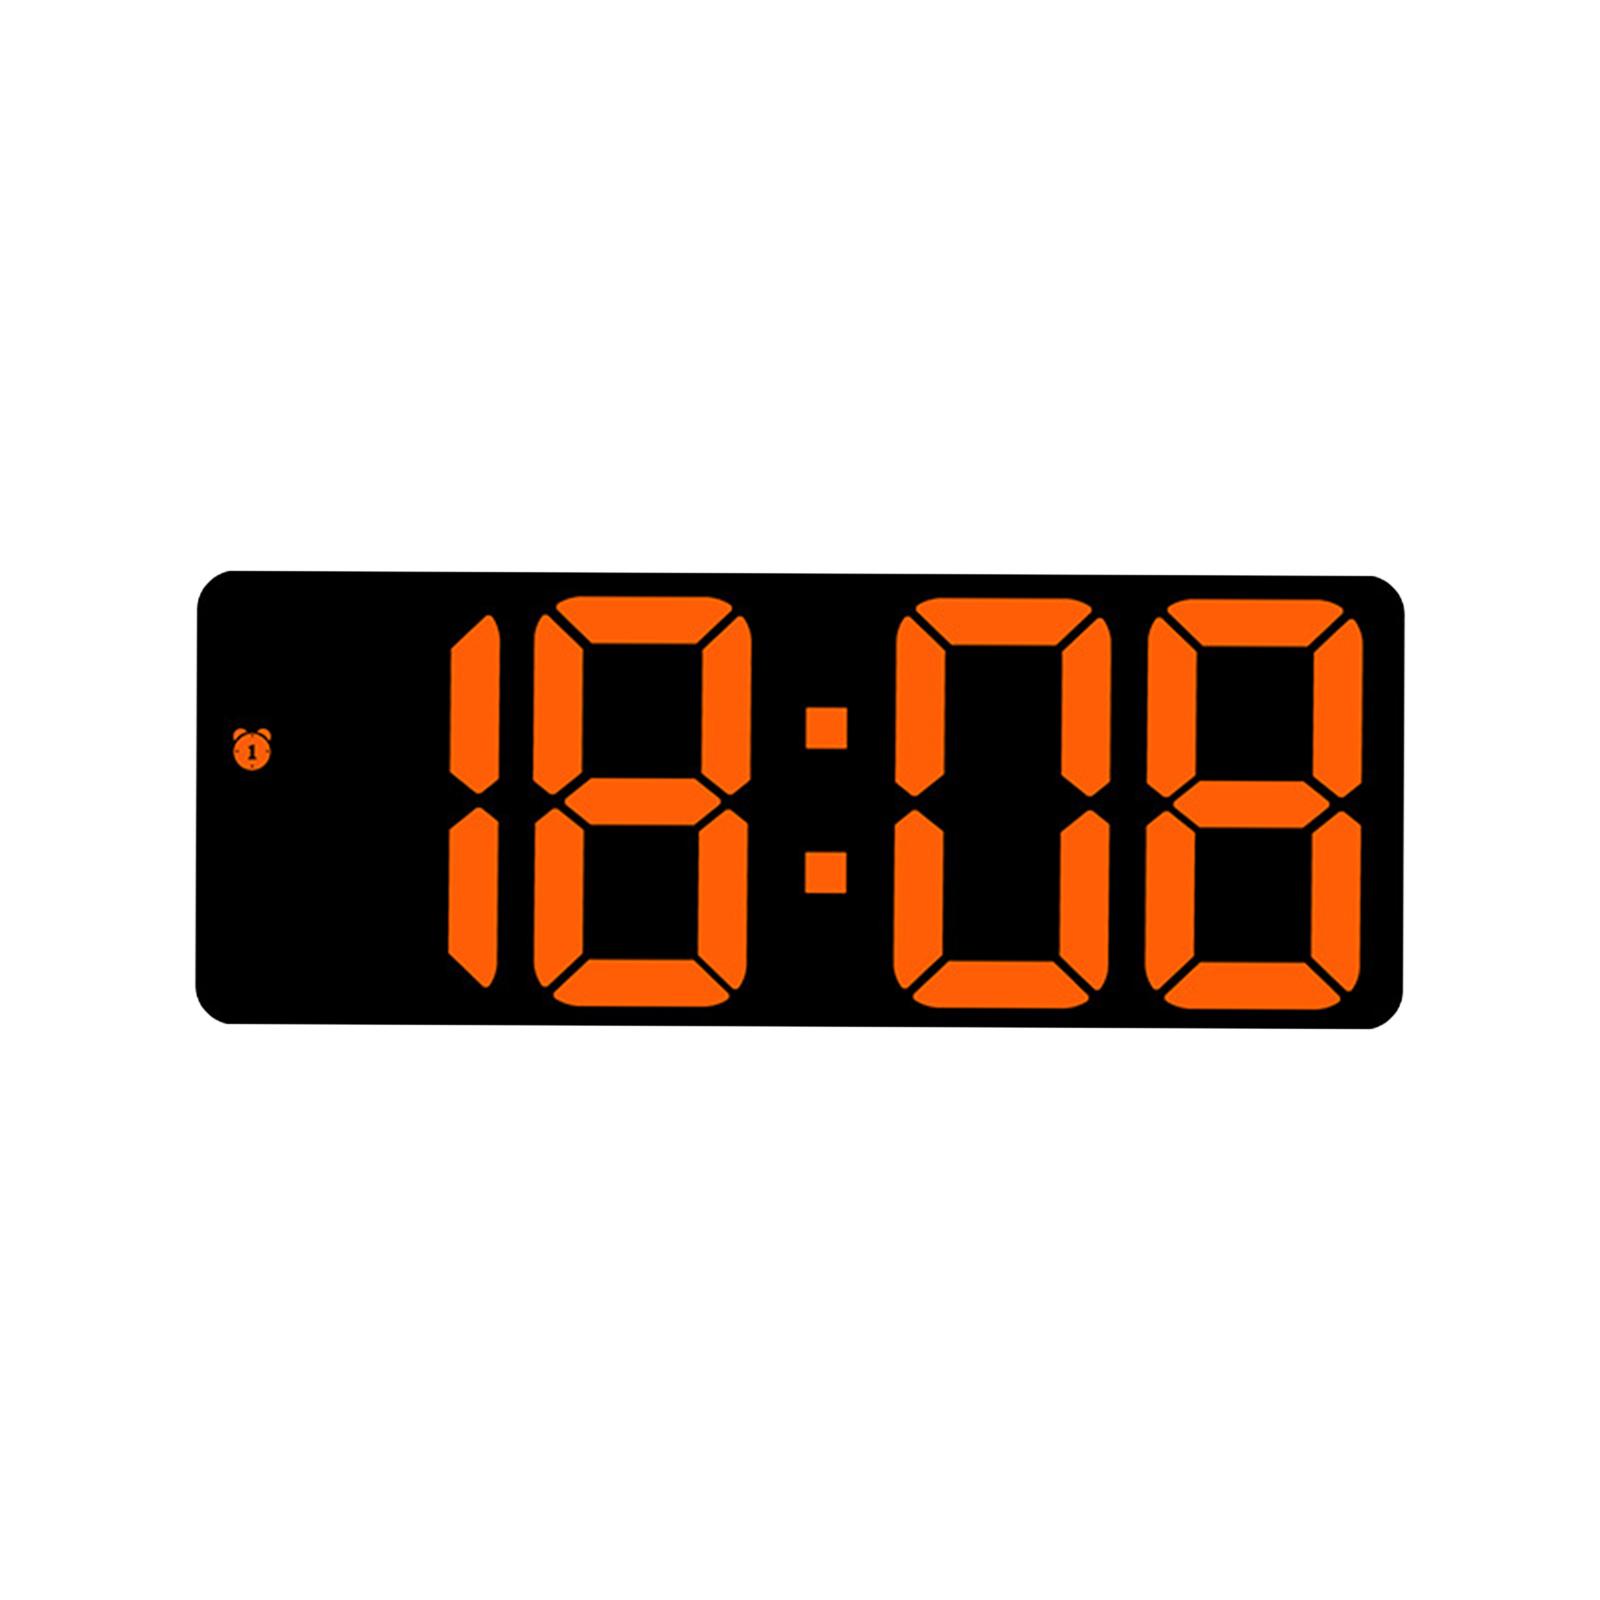 Digital Wall Clock Desk LED Desktop Alarm Clock for Living Room Adult Office Orange